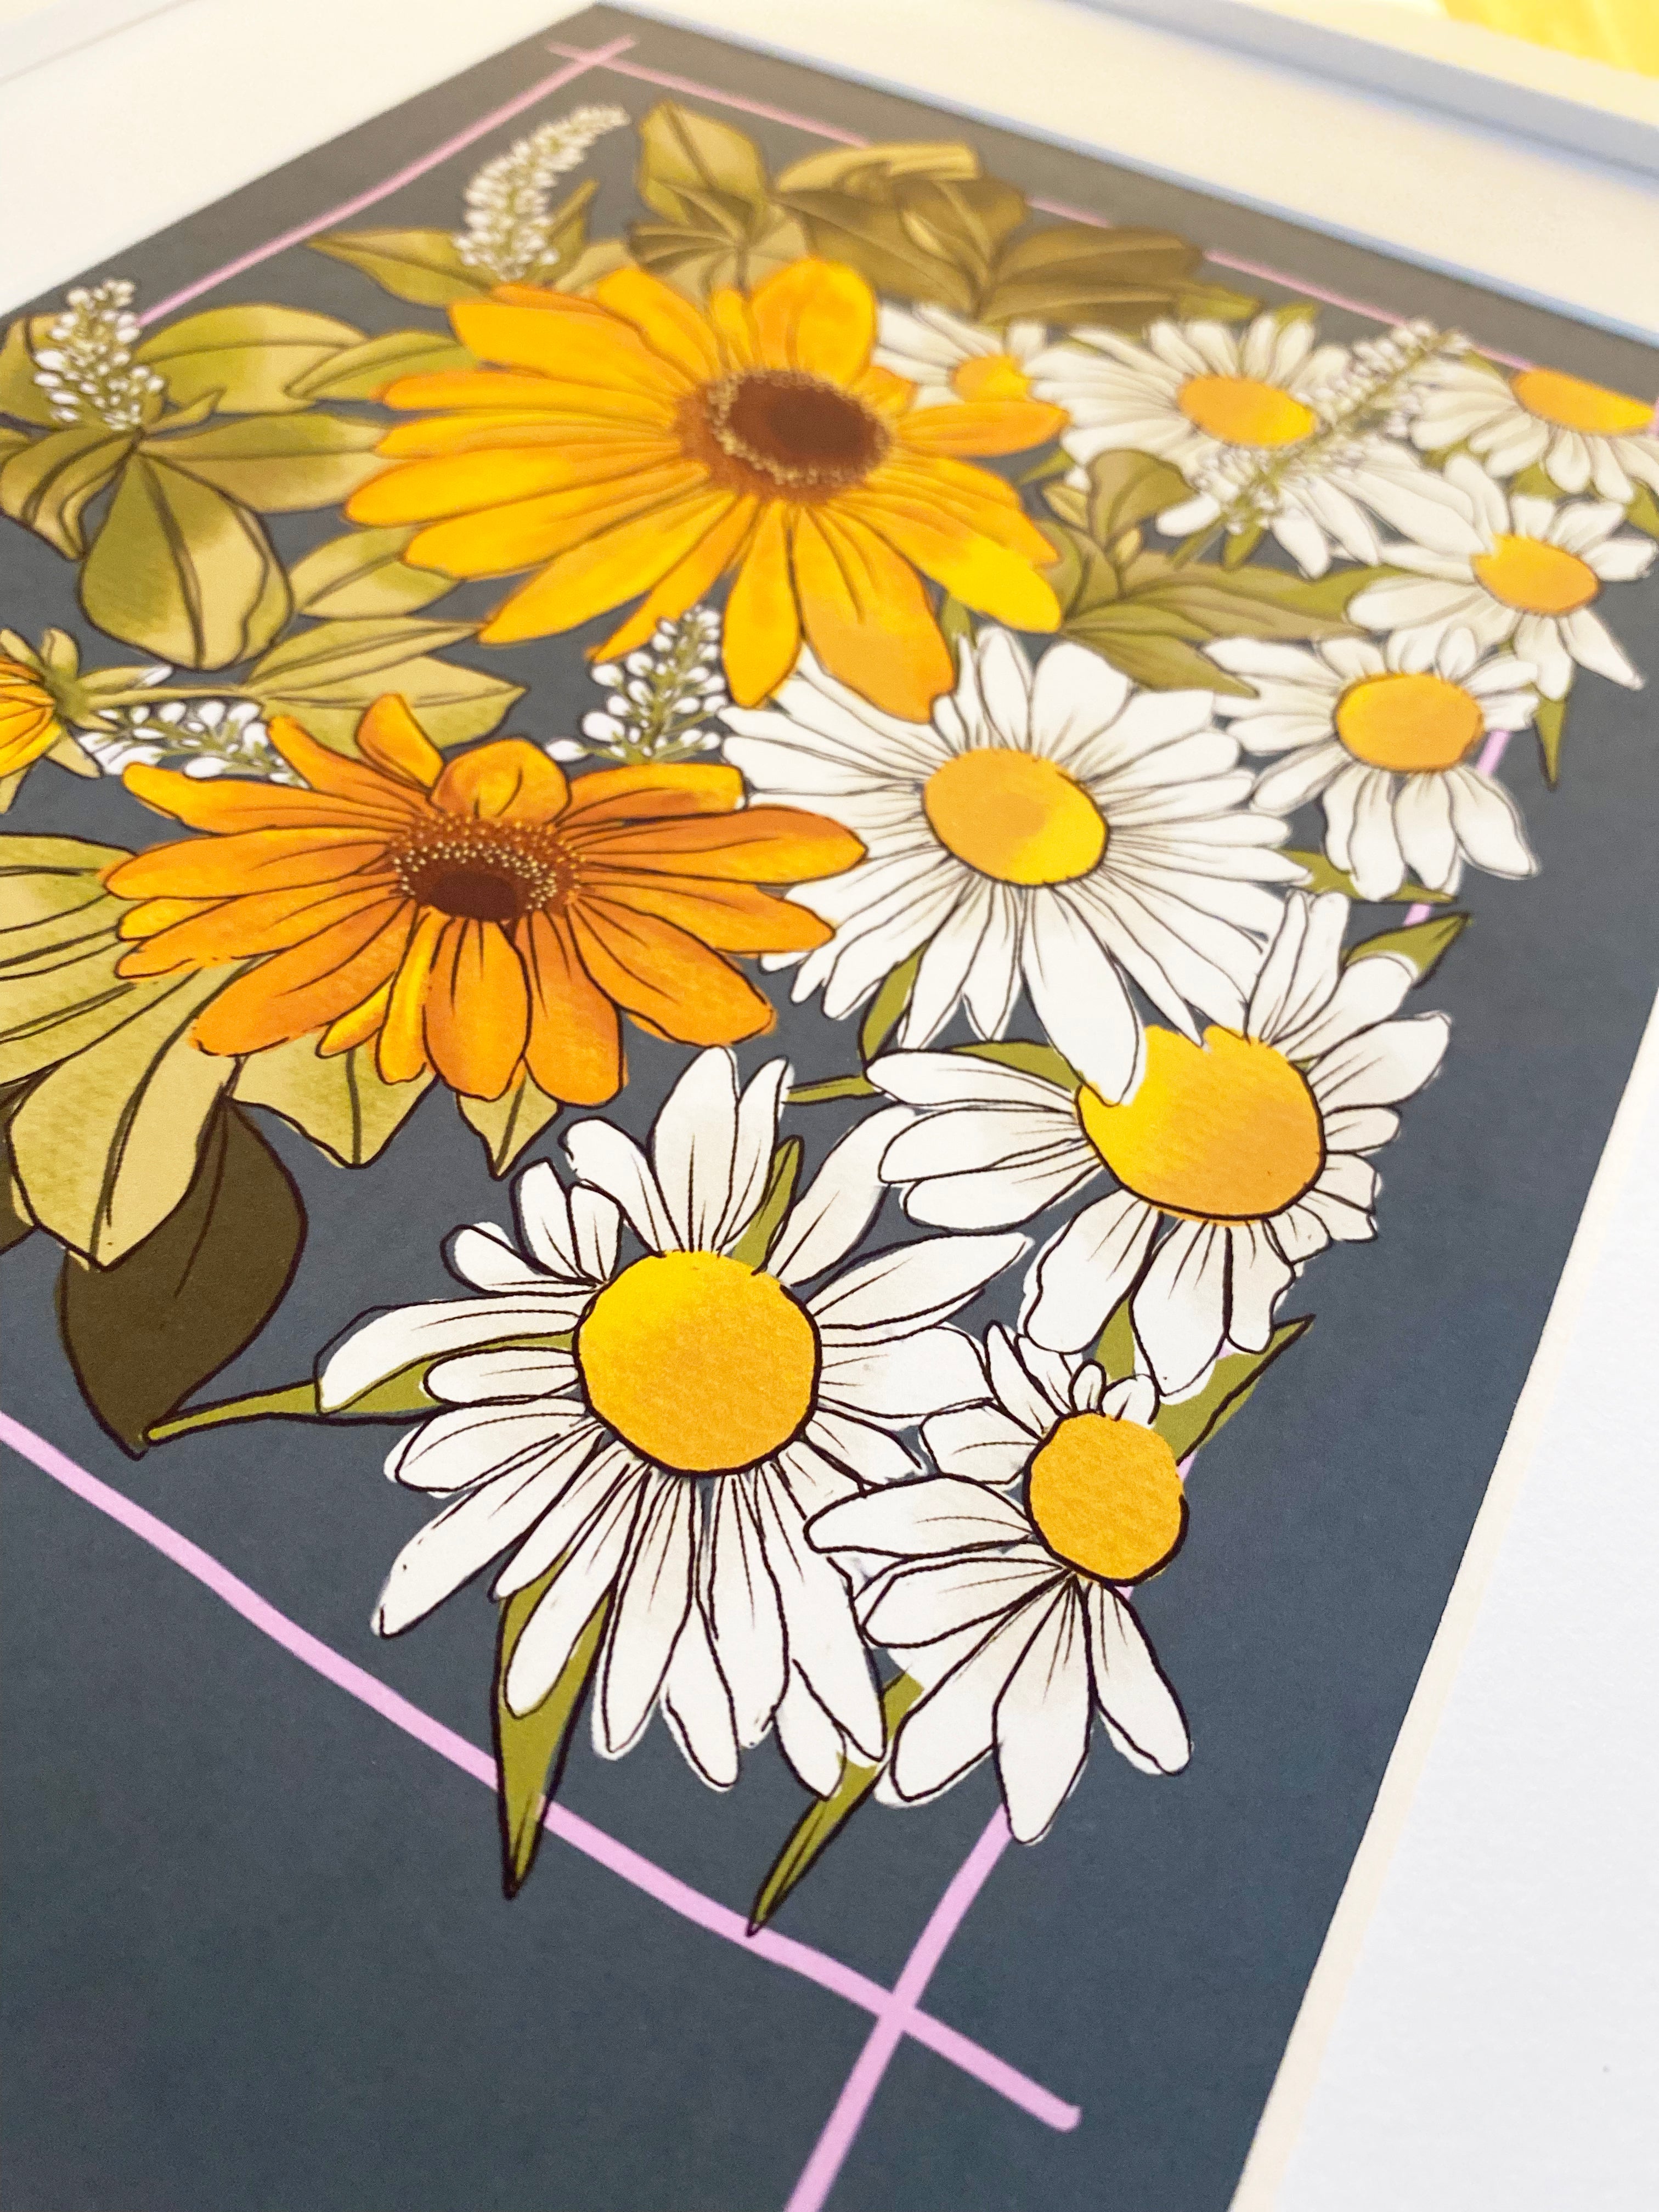 Rudbeckia, daisies and gooseneck floral print